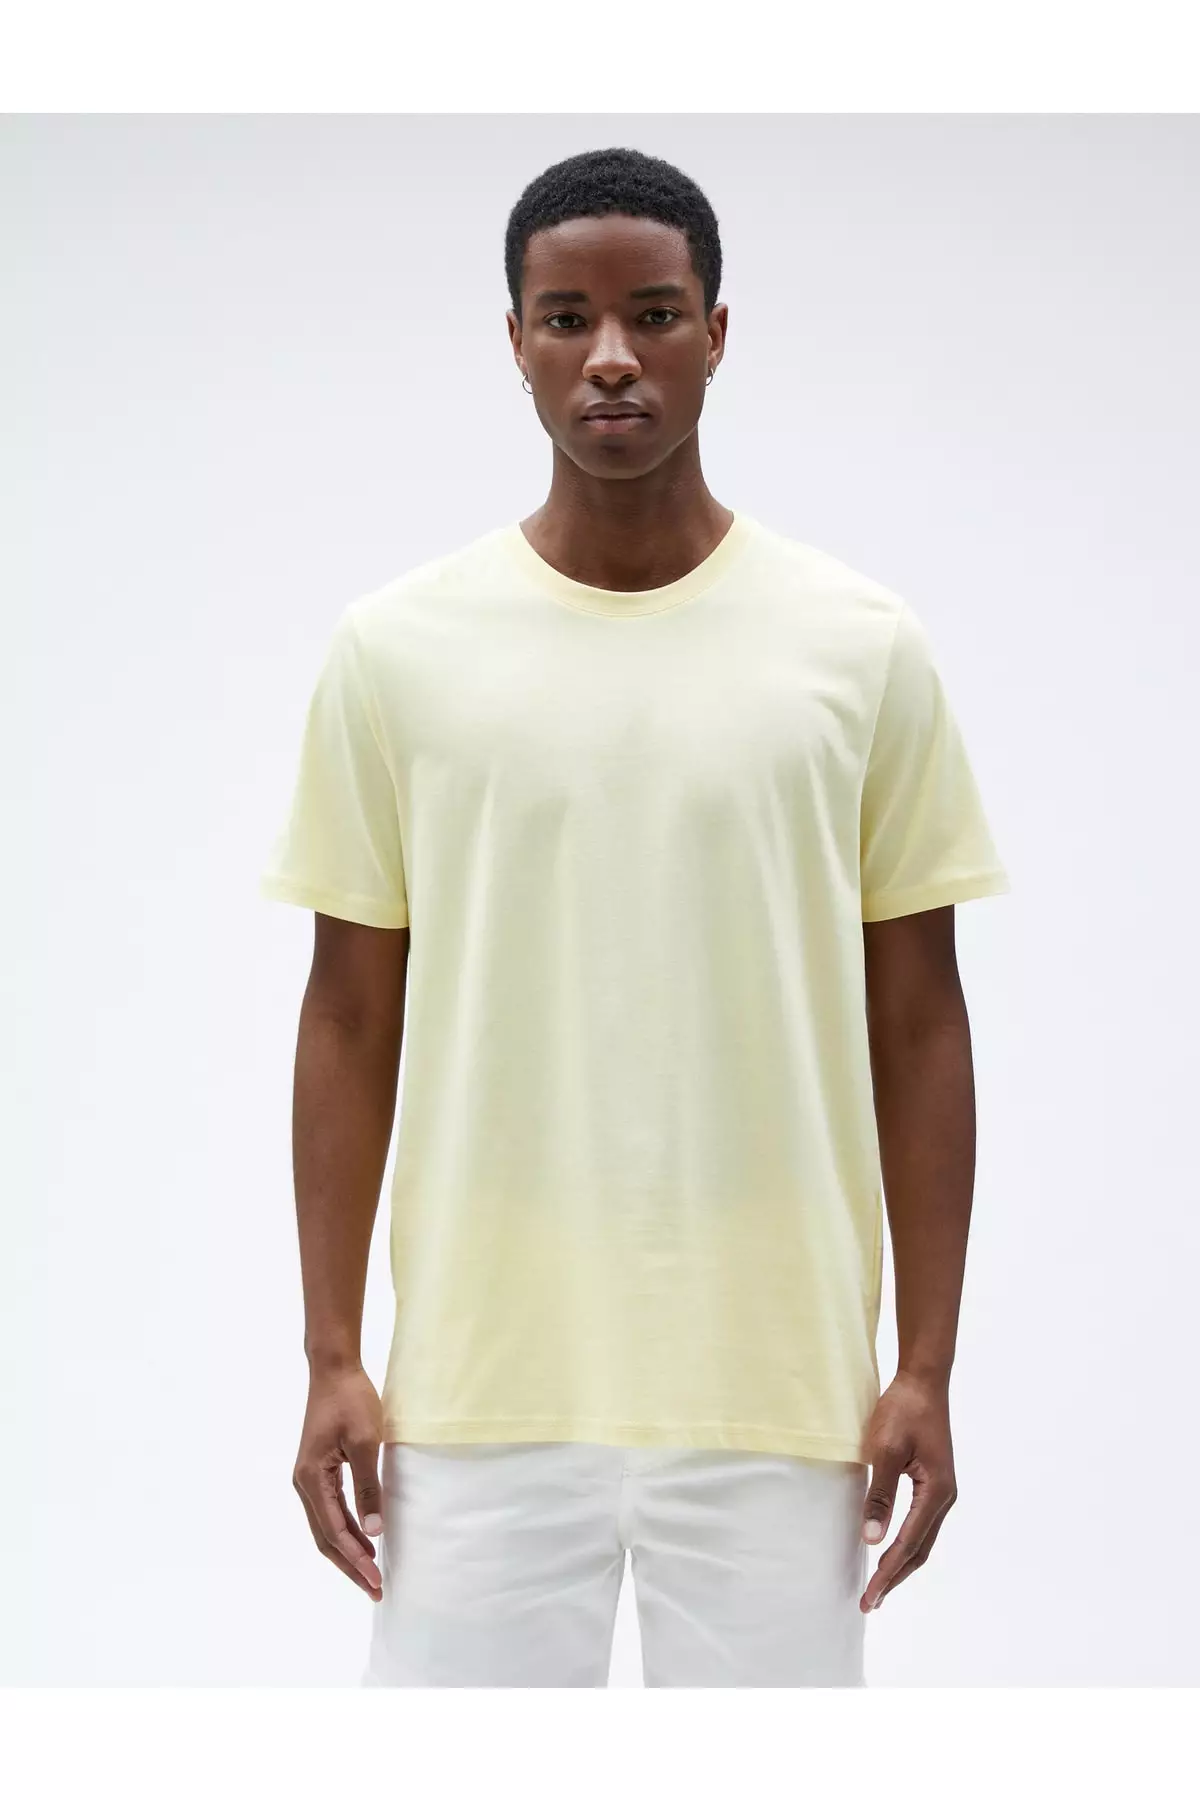 1.Buy Men's Yellow T-shirt Online